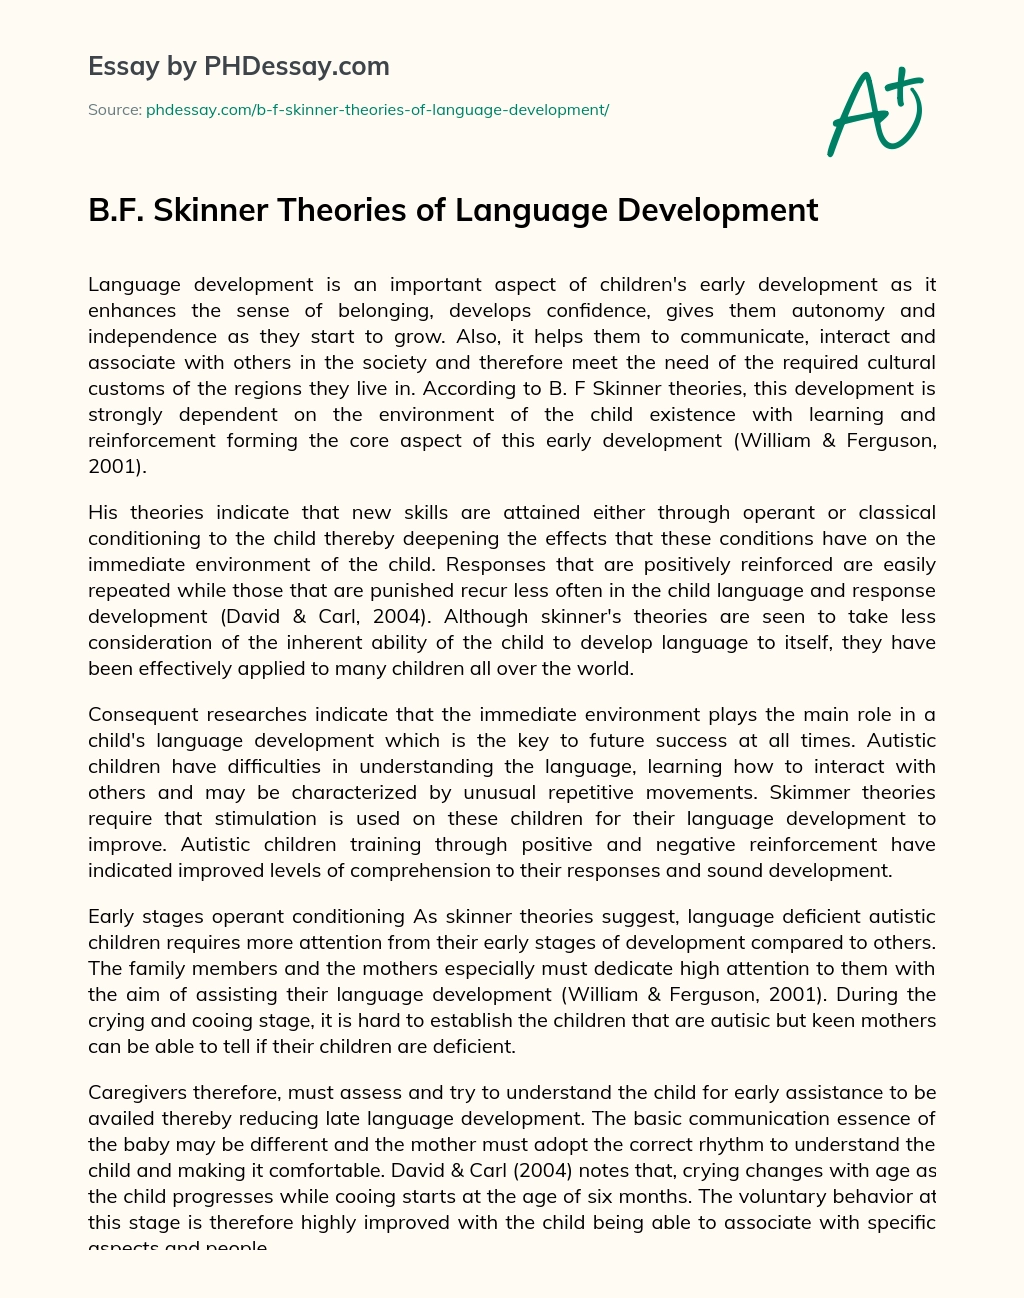 B.F. Skinner Theories of Language Development essay